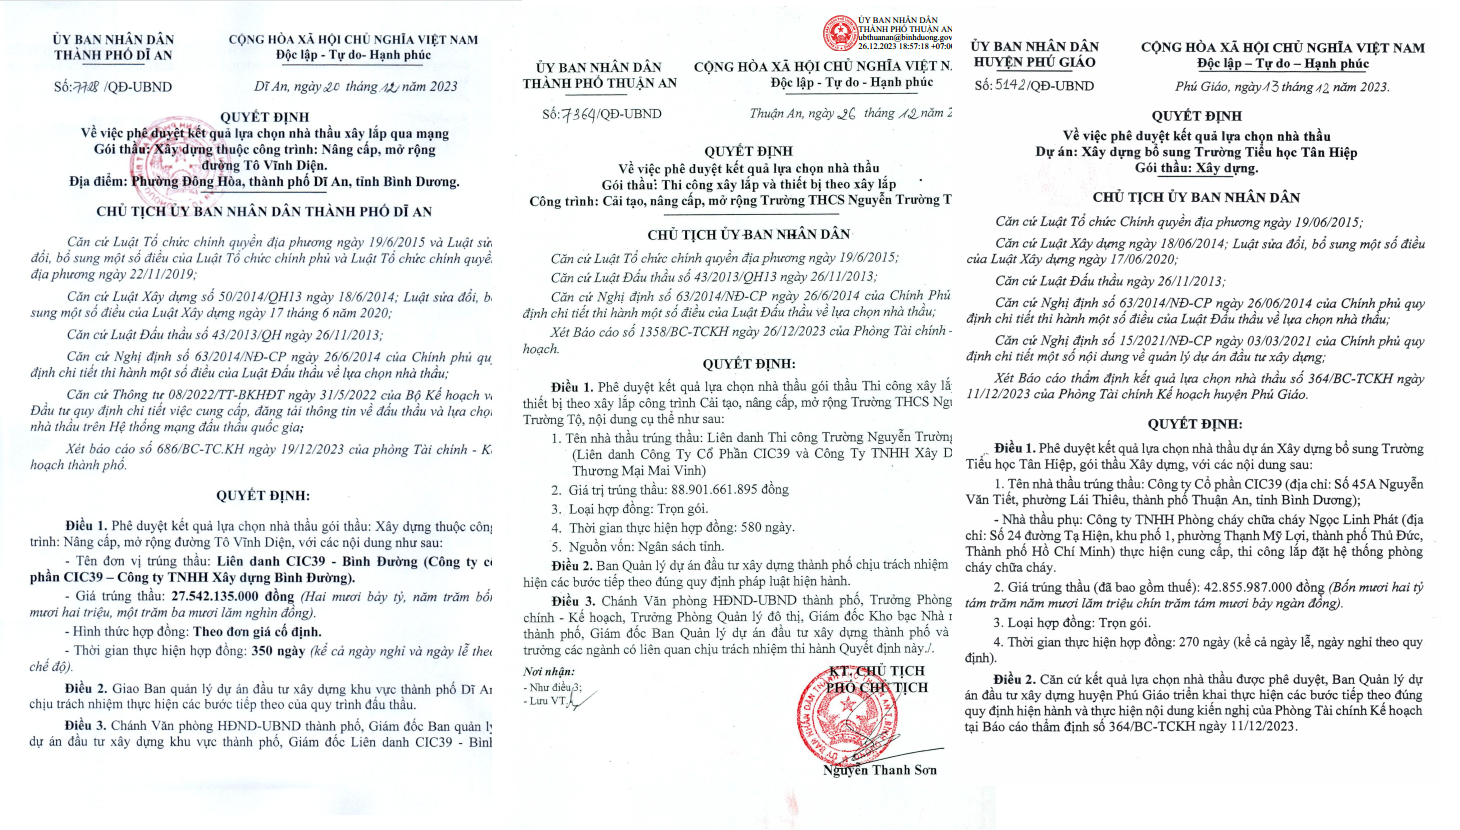 CIC39 bị loại thầu ở cấp tỉnh vì văn bằng 'có dấu hiệu làm giả', vẫn trúng liên tiếp tại Thuận An, Dĩ An, Phú Giáo